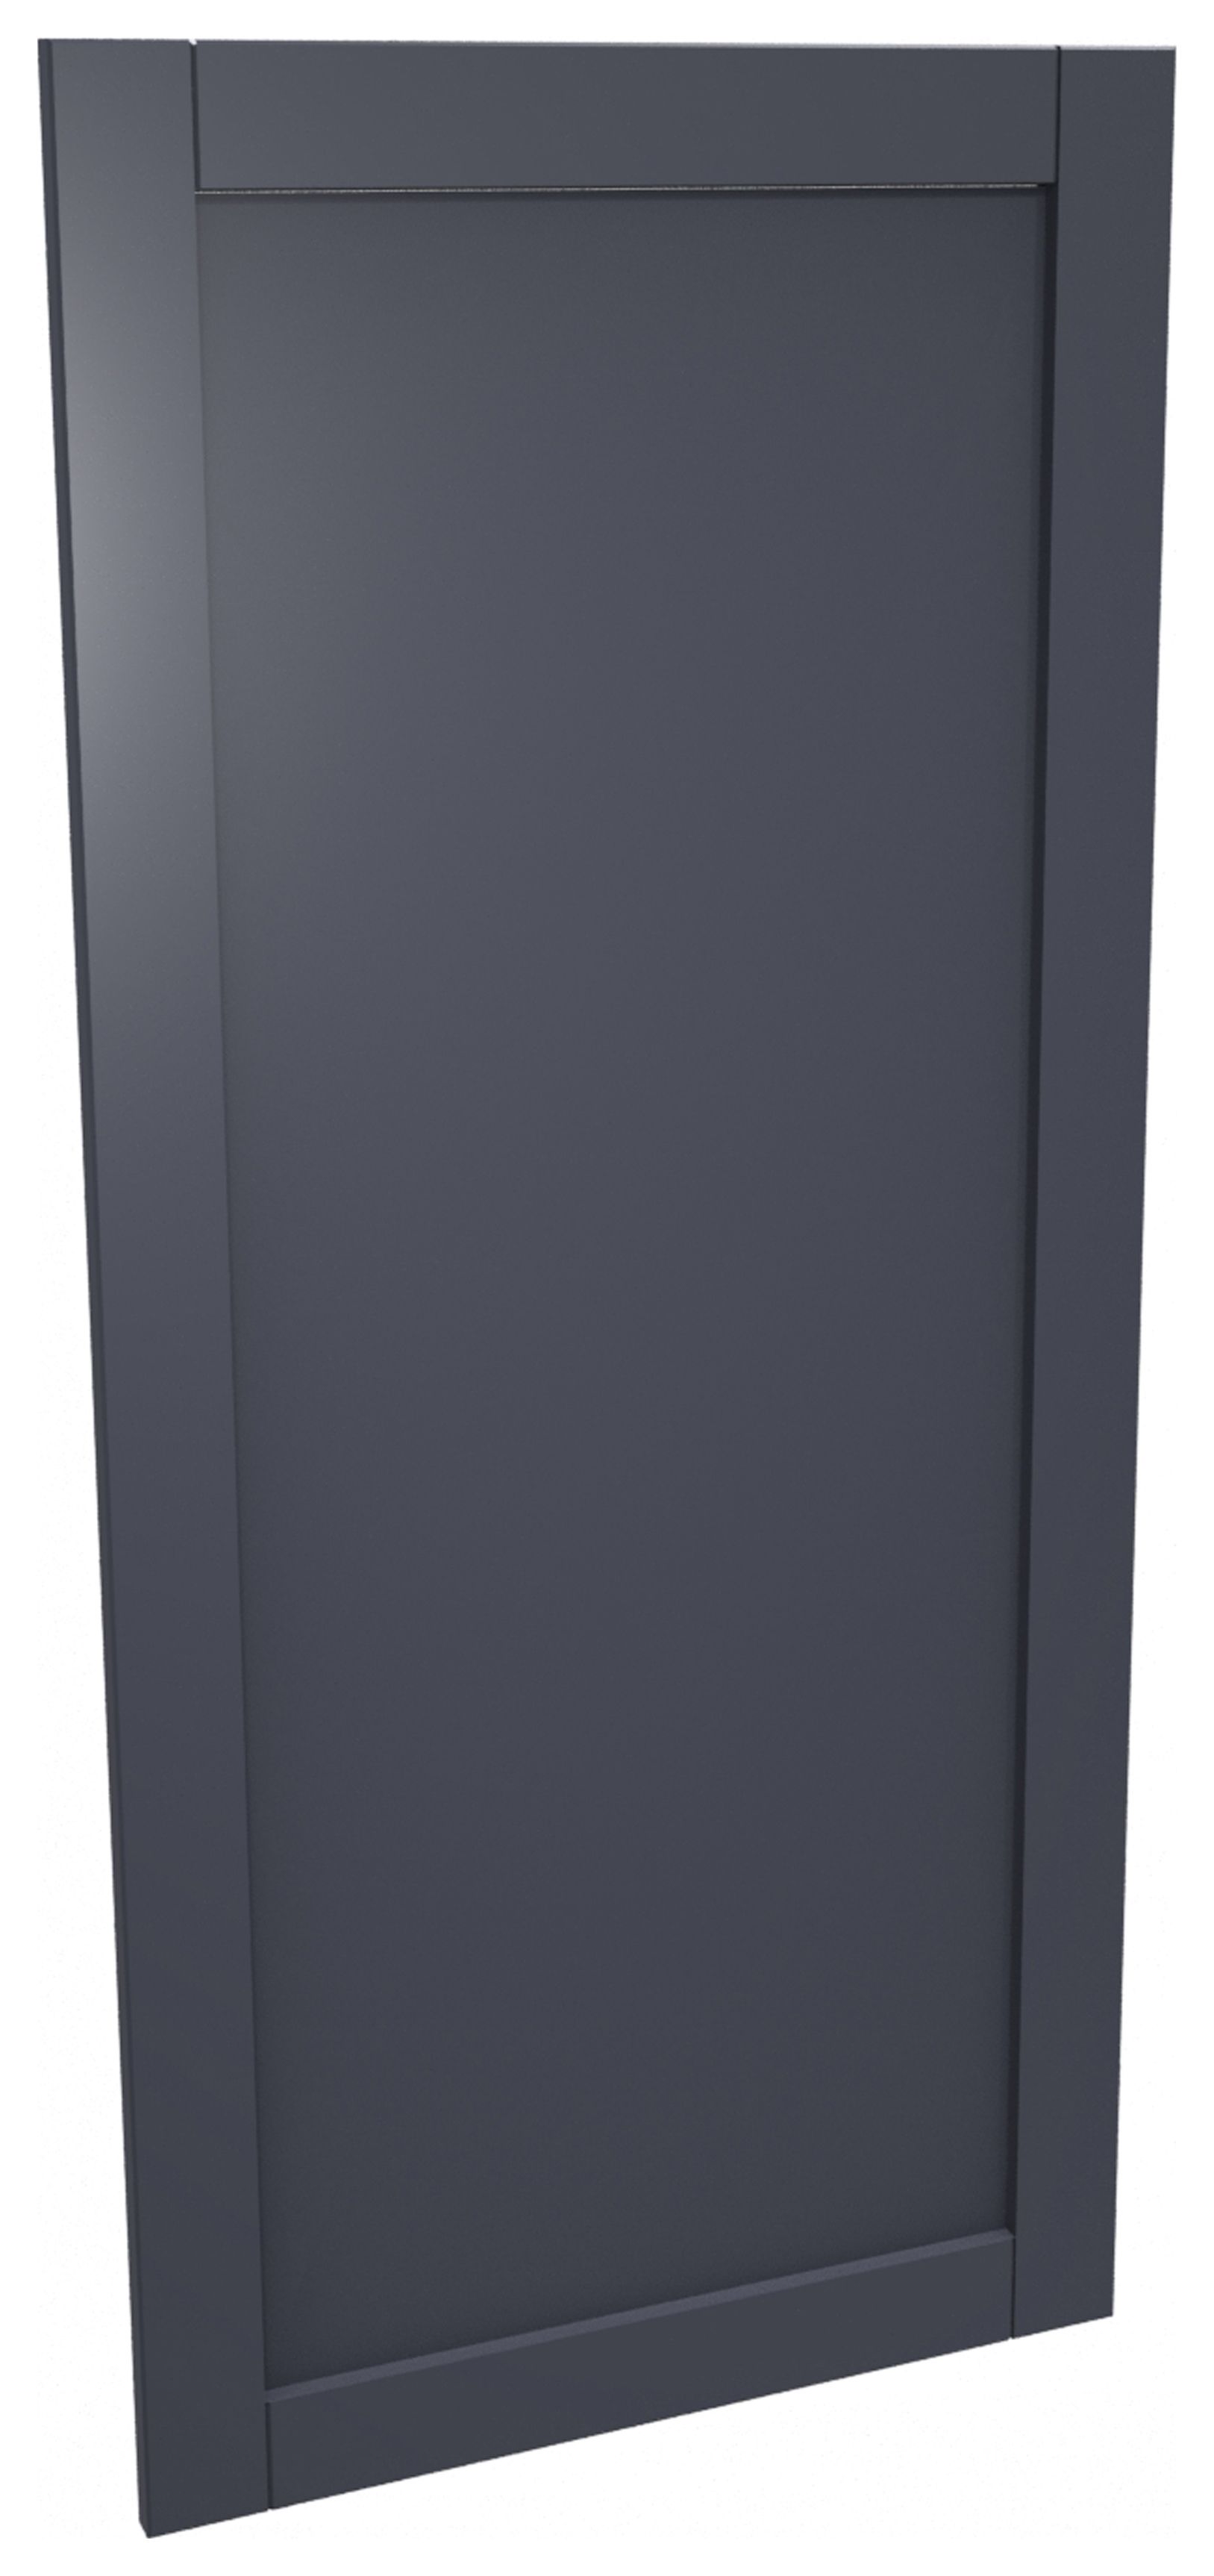 Image of Ohio Navy Shaker Appliance Door (A) - 600 x 1319mm